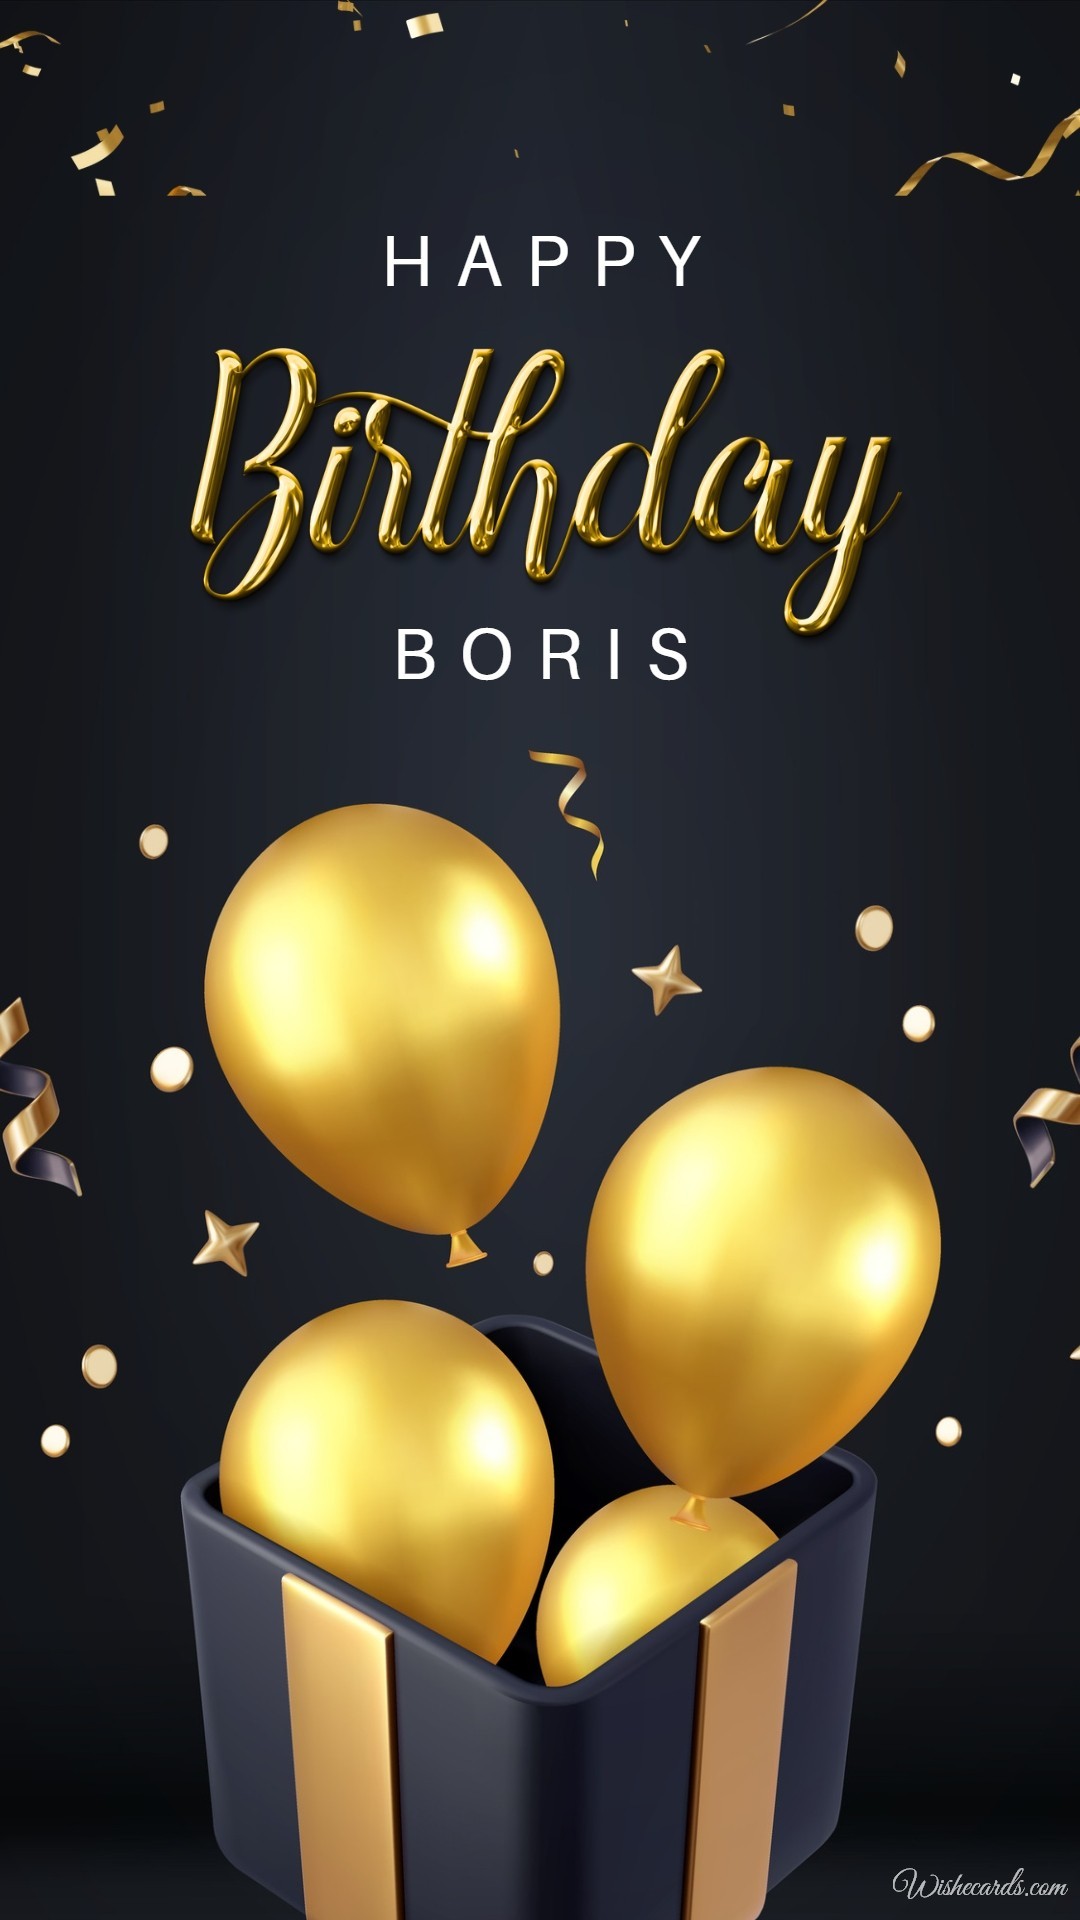 Happy Birthday Boris Image